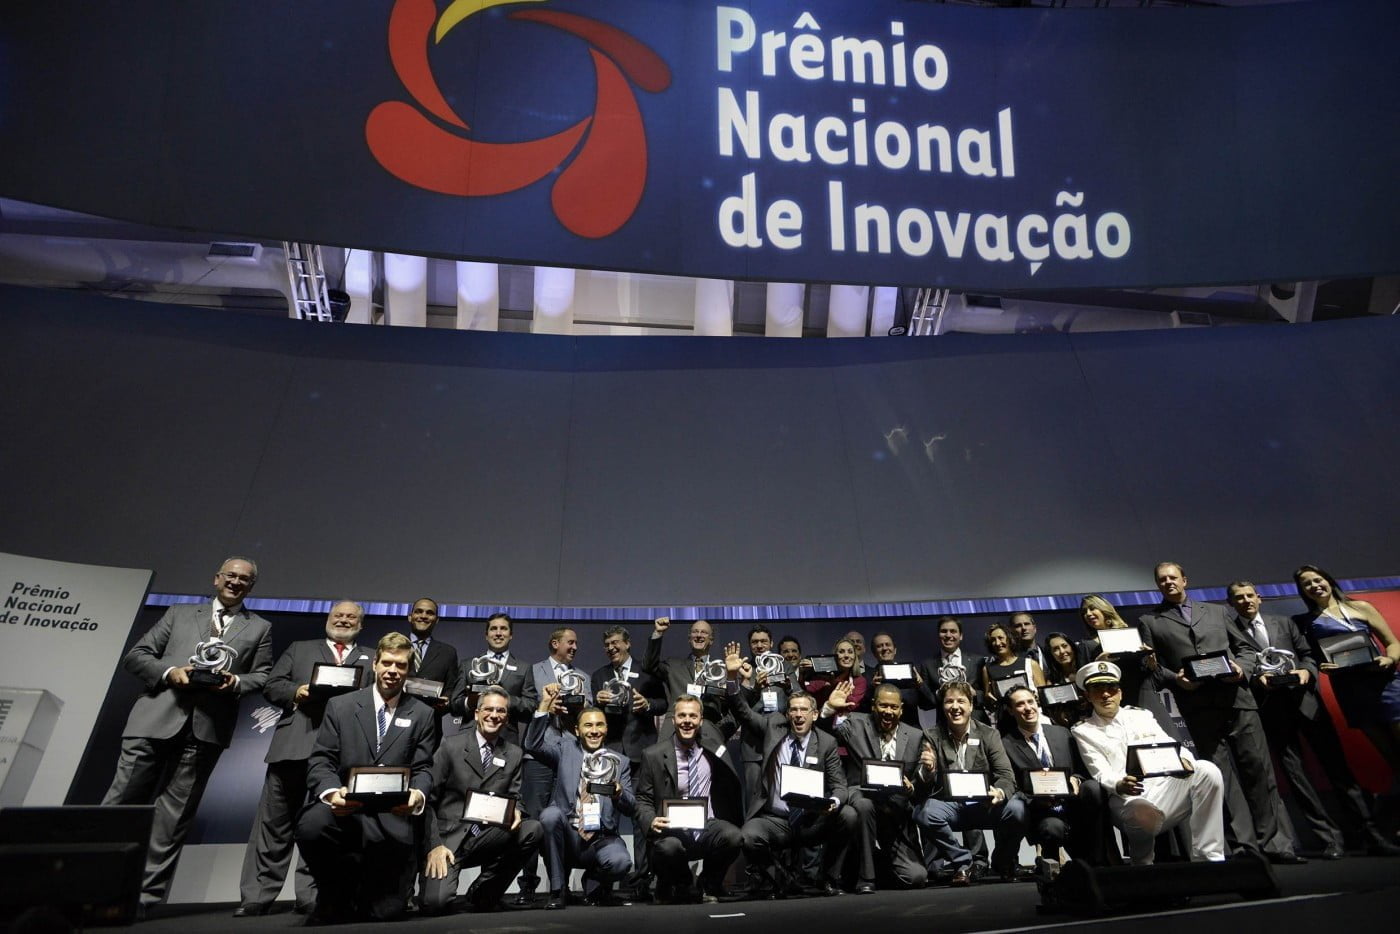 Prêmio Nacional de Inovação